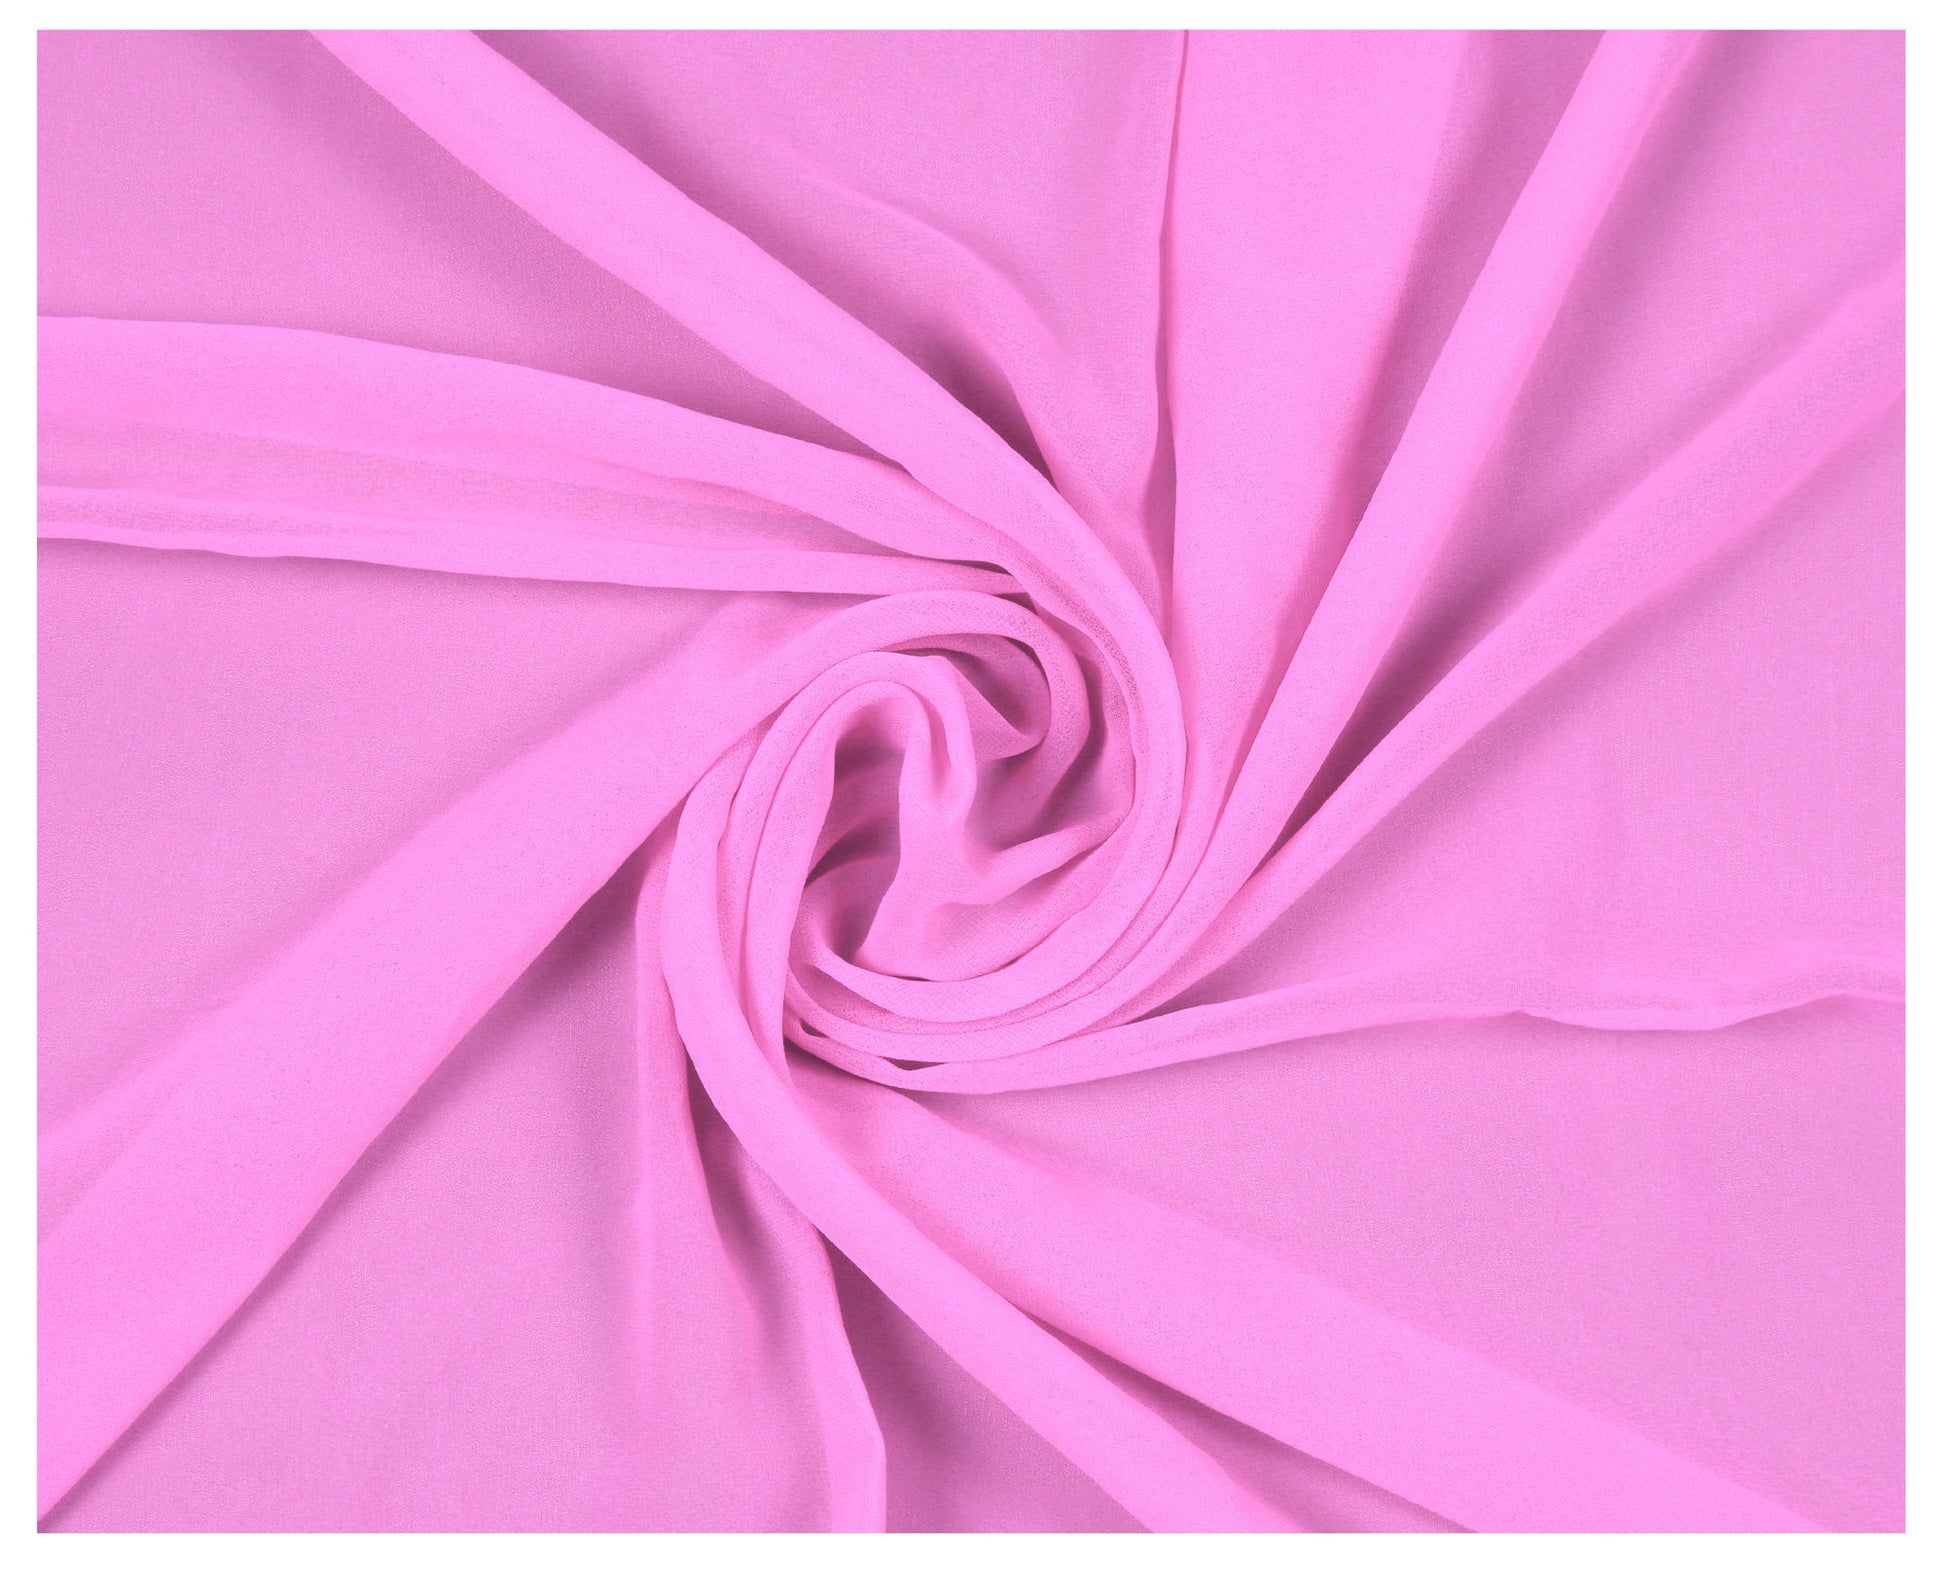 Bubblegum Pink,e7a015df-841d-4998-afb5-f01f461e6c76